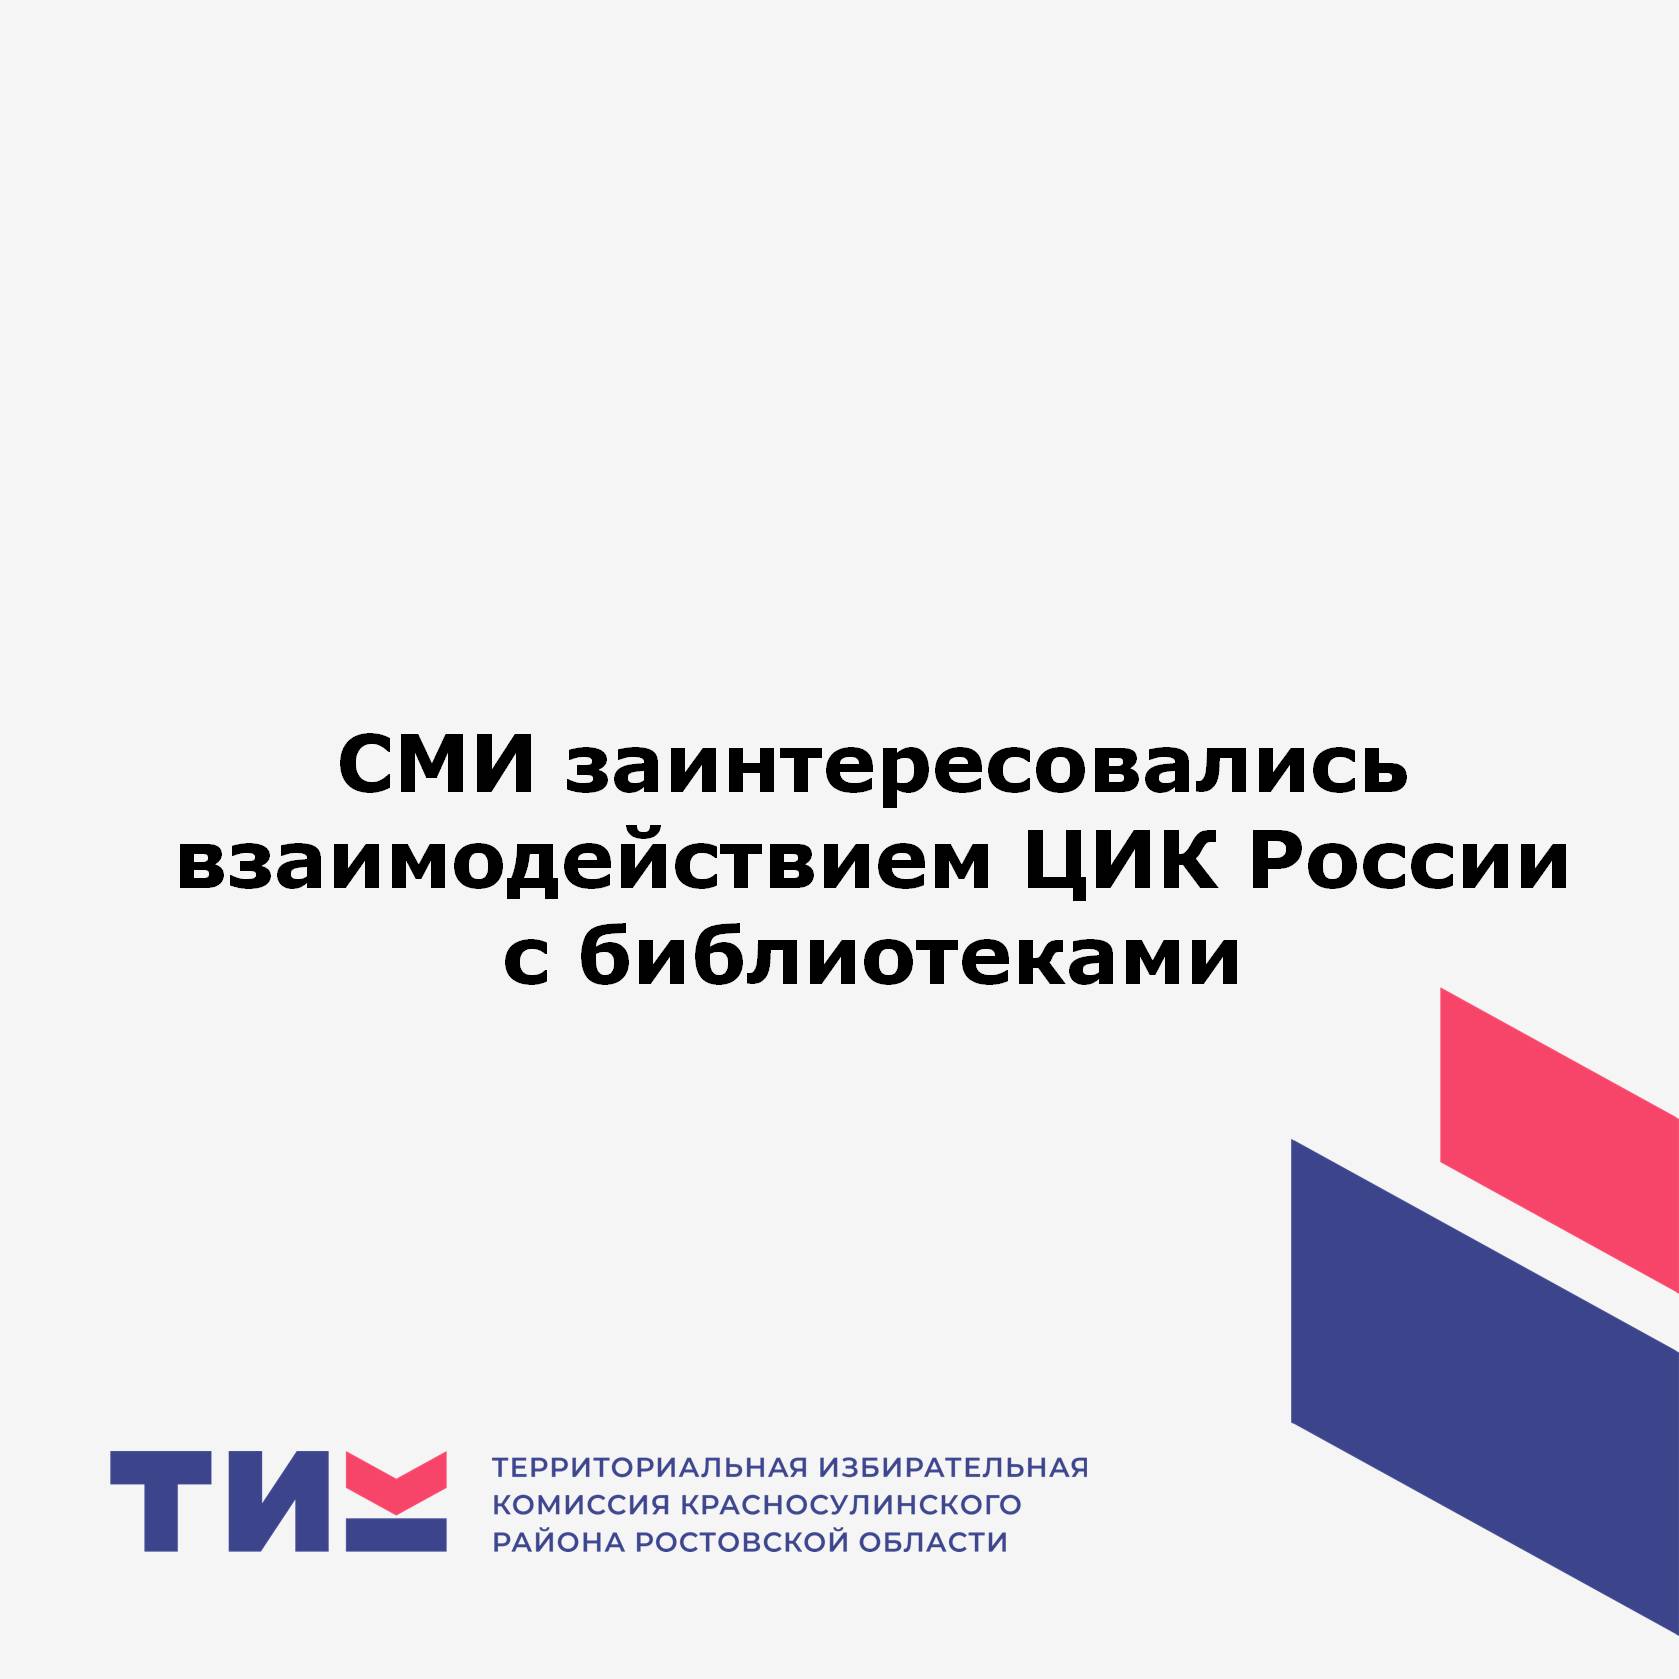 СМИ заинтересовались взаимодействием ЦИК России с библиотеками